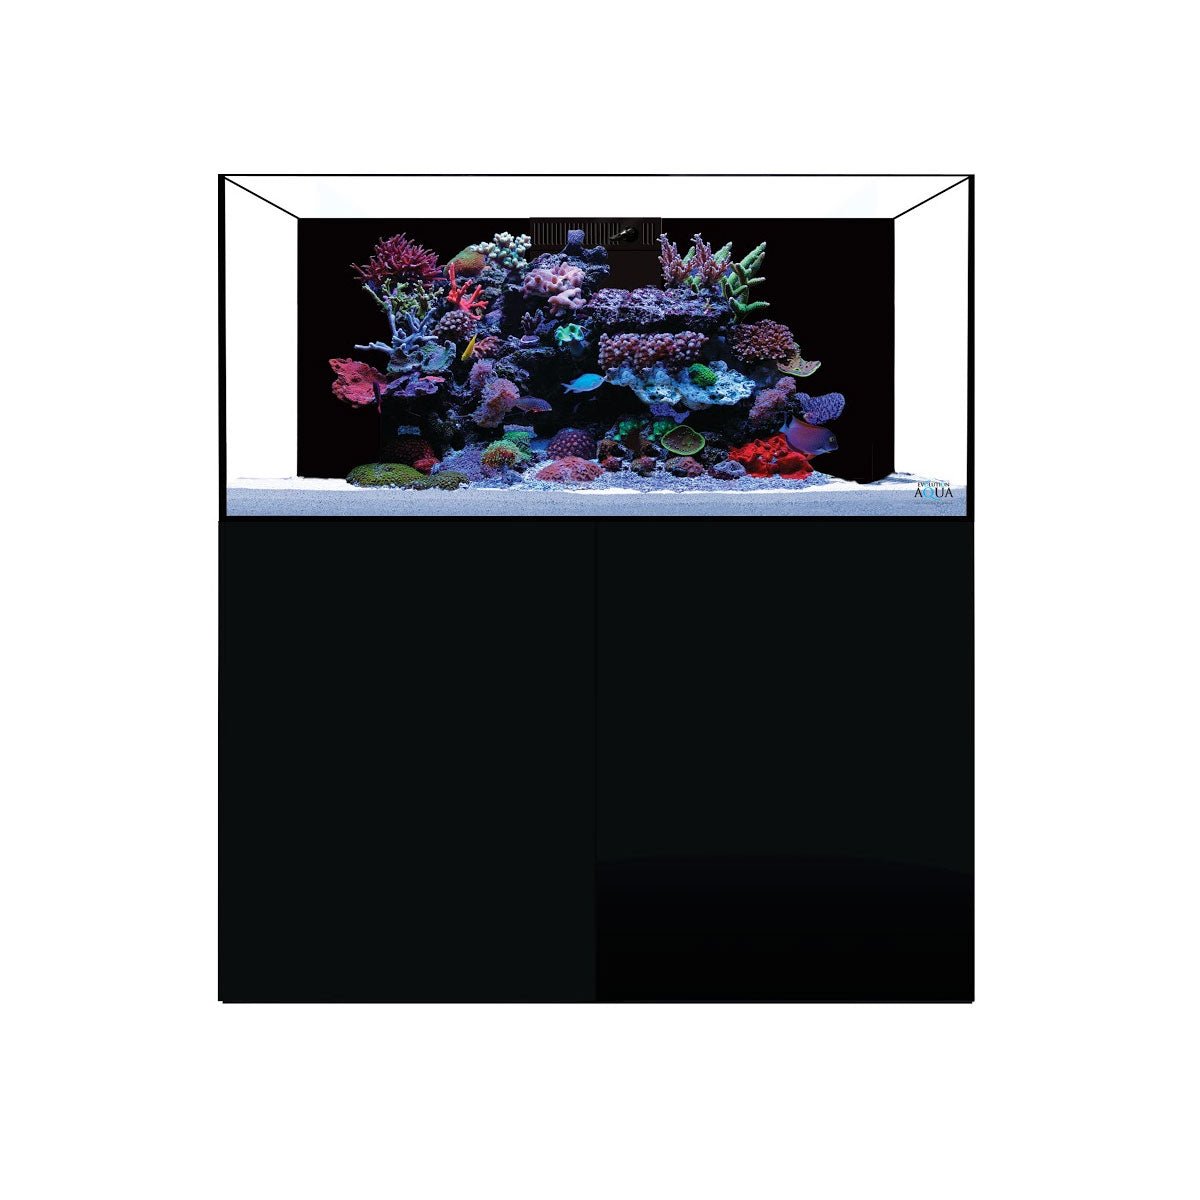 D-D Aqua-Pro Reef 1200 - Carbon Oak - AquaFrame Cabinet - Charterhouse Aquatics